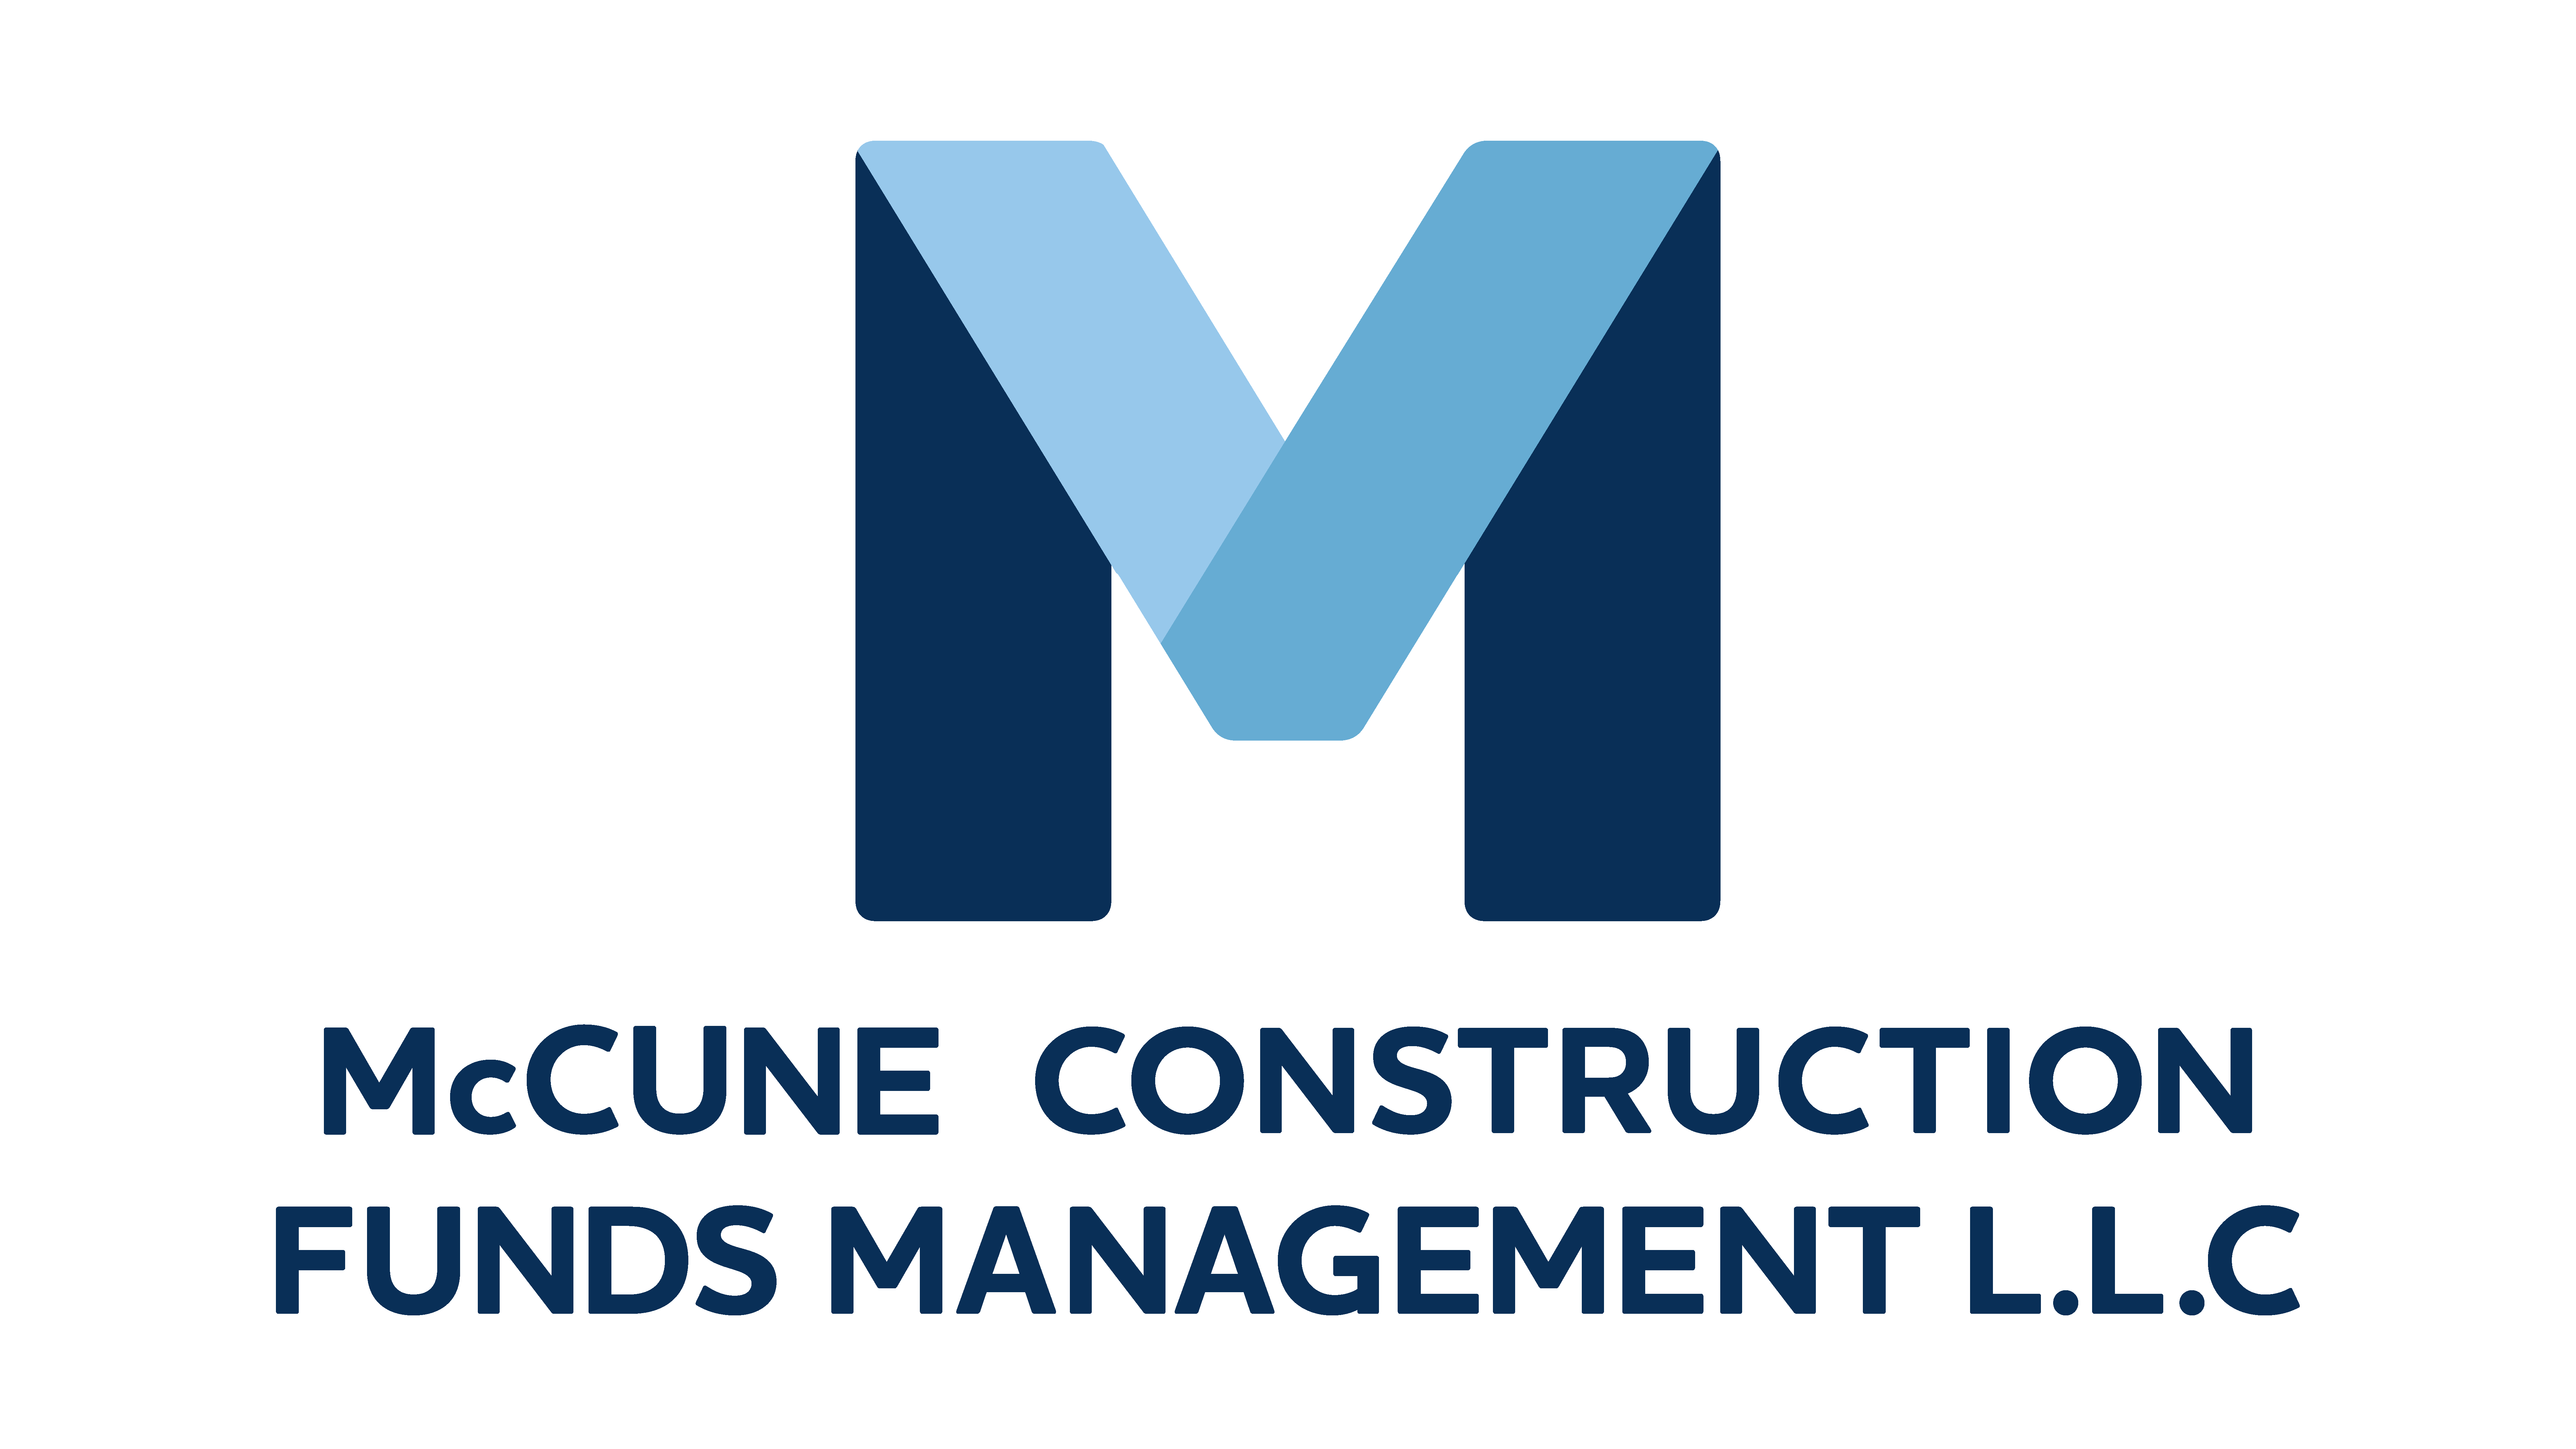 McCune Construction Funds Management, LLC